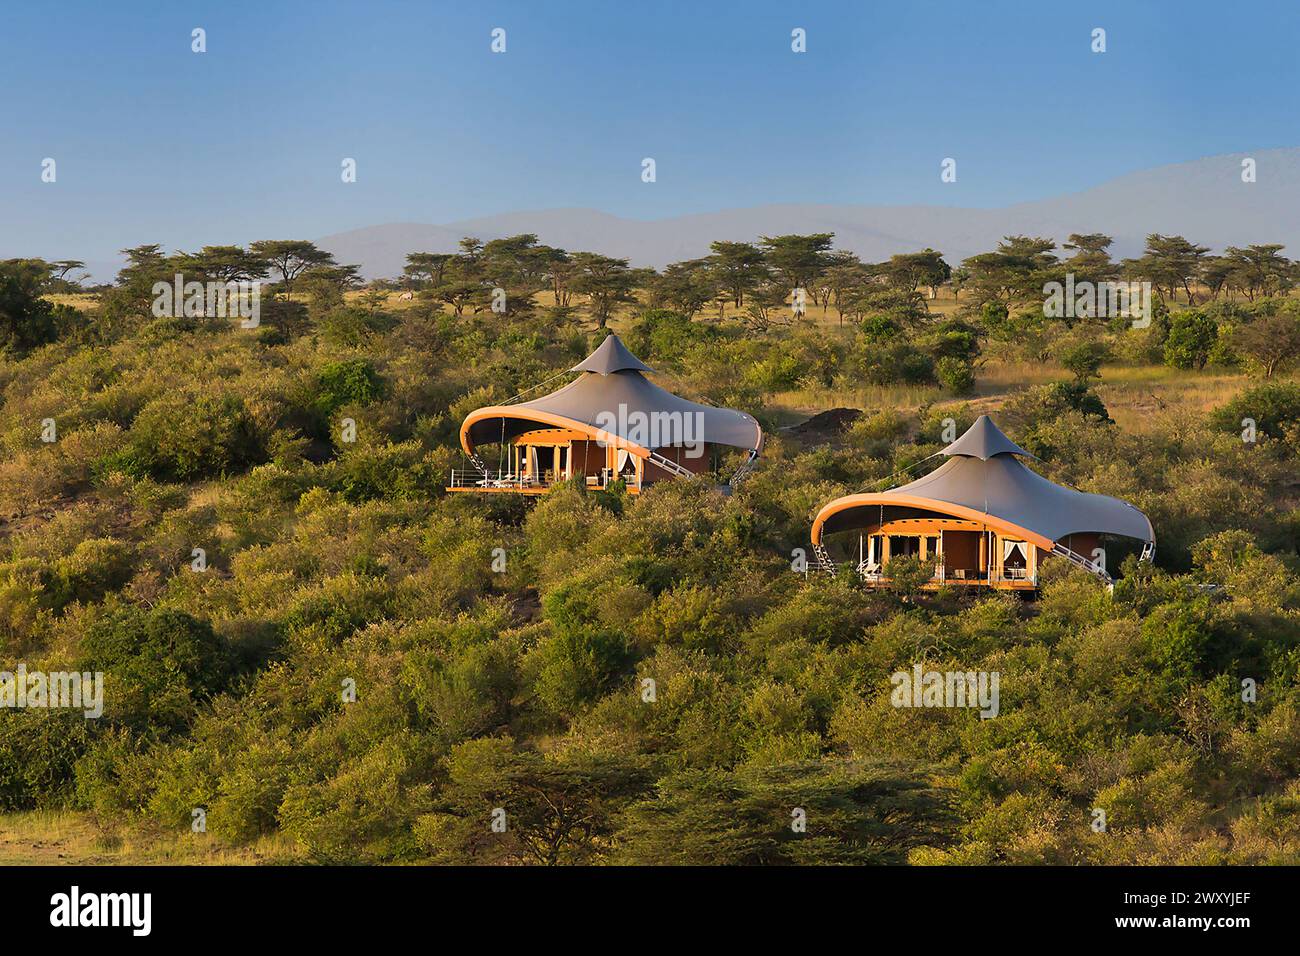 Kenia : Mahali Mzuri, ein luxuriöses Safari-Camp mit 12 luxuriösen Zelt-Suiten im Besitz des britischen Milliardärs Sir Richard Branson, Gründer und CEO von Virgin Stockfoto